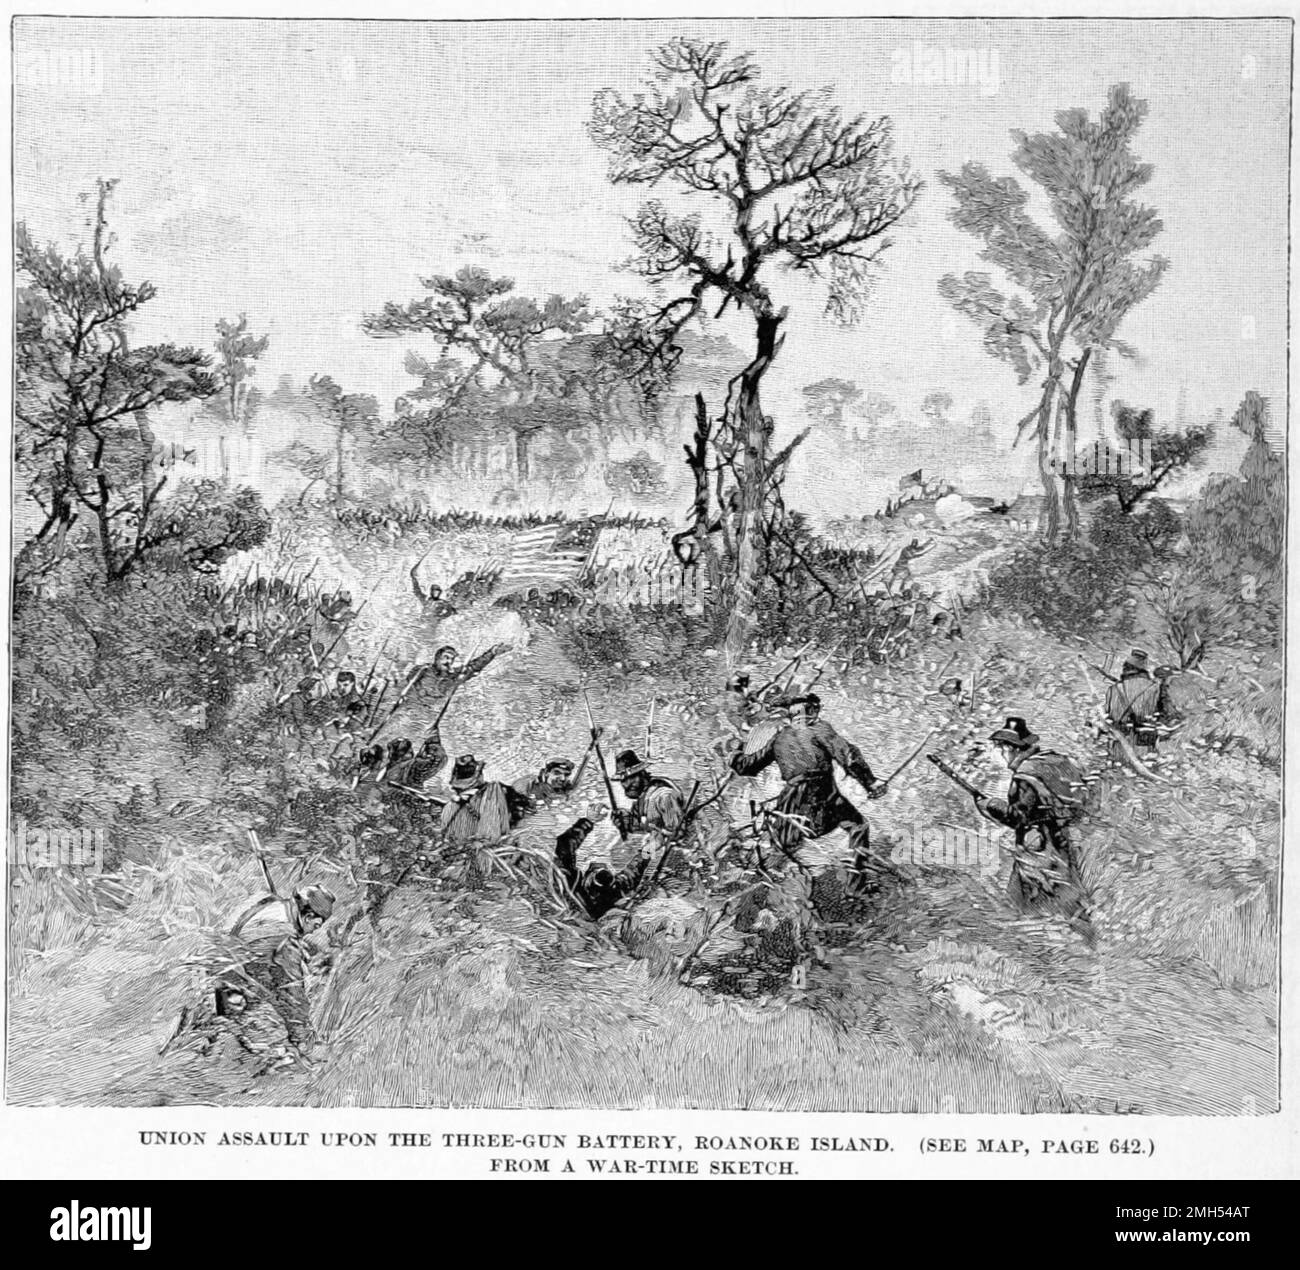 La Batalla de la Isla Roanoke fue una batalla en la Guerra Civil Americana que se libró del 7 al 8th de febrero de 1862 en Carolina del Norte. Fue un ataque anfibio unionista bajo el mando de Ambrose Burnside, y fue una victoria unionista cuando la Isla fue capturada. La imagen representa la carga de bayoneta de los Voluntarios de Nueva York (Hawkins Zouaves) en la batería de tres armas Foto de stock